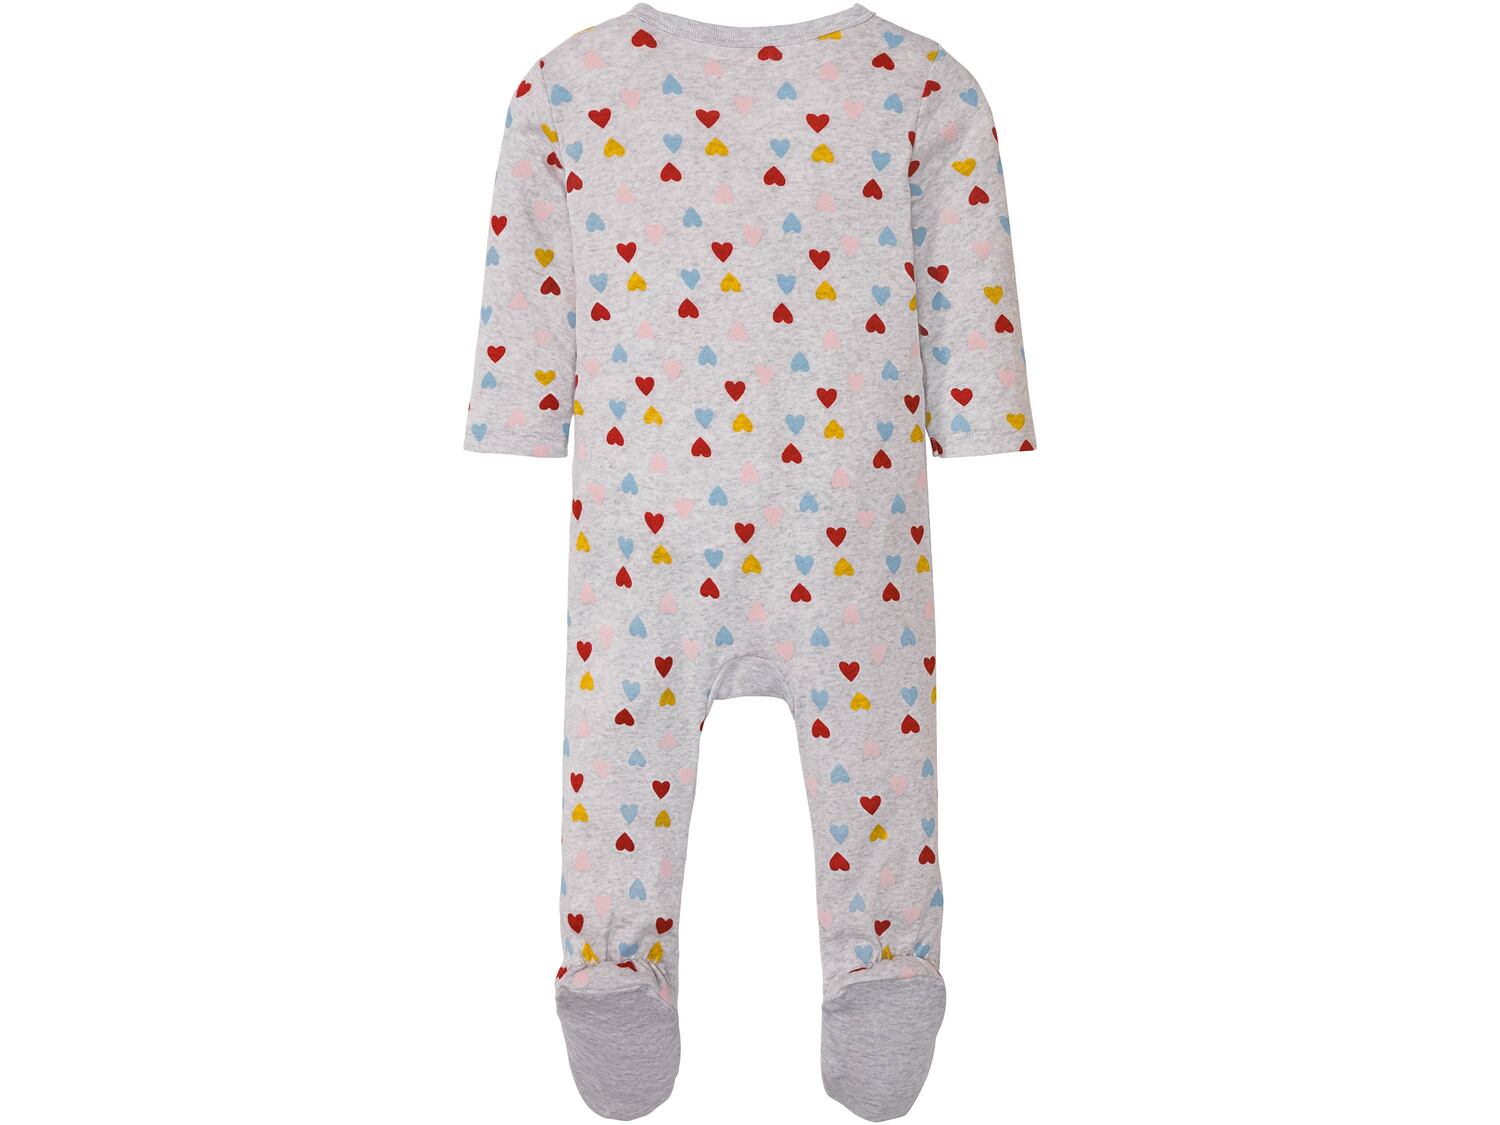 Pajacyk niemowlęcy Lupilu, cena 17,99 PLN 
- rozmiary: 56-92
- 100% bawełny
- ...